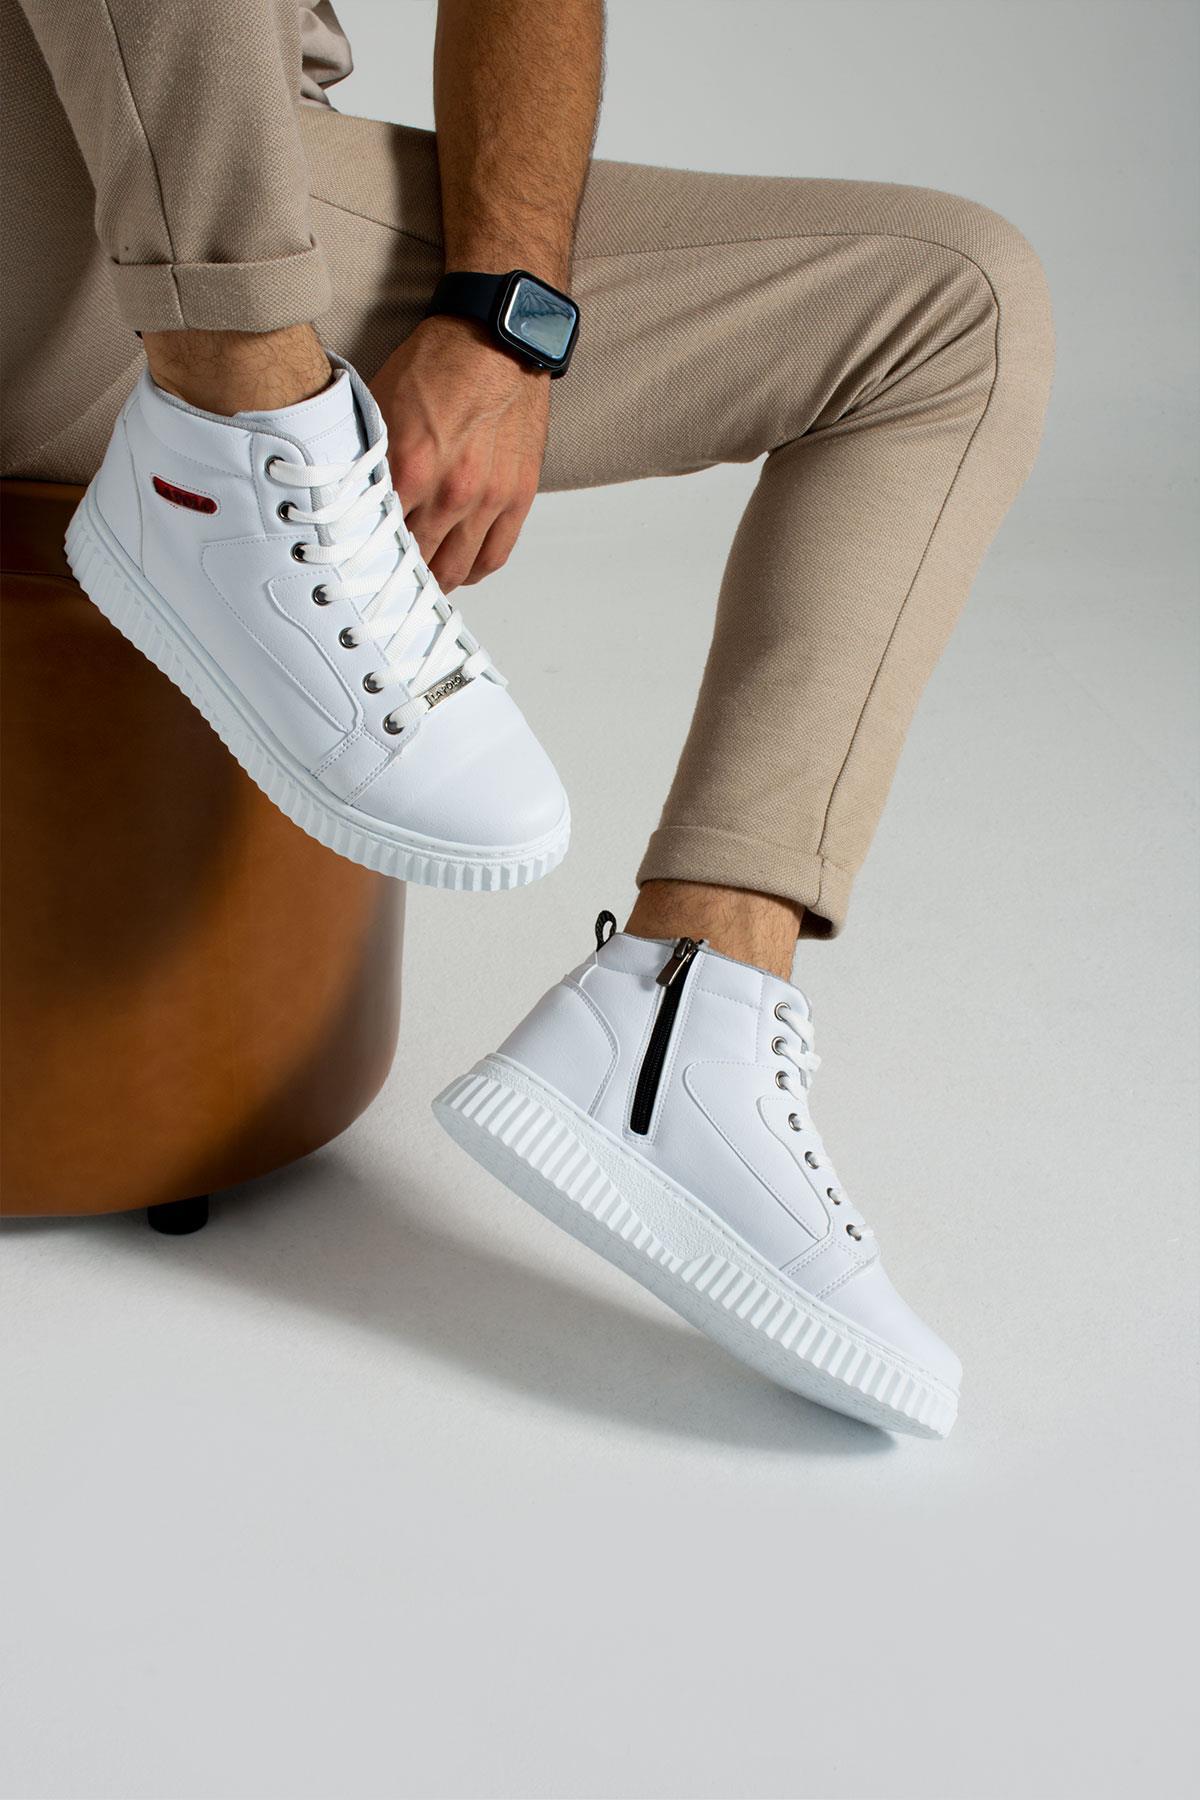 013 თეთრი ფერის თეთრი ფერის მამაკაცის ყოველდღიური ფეხსაცმელი